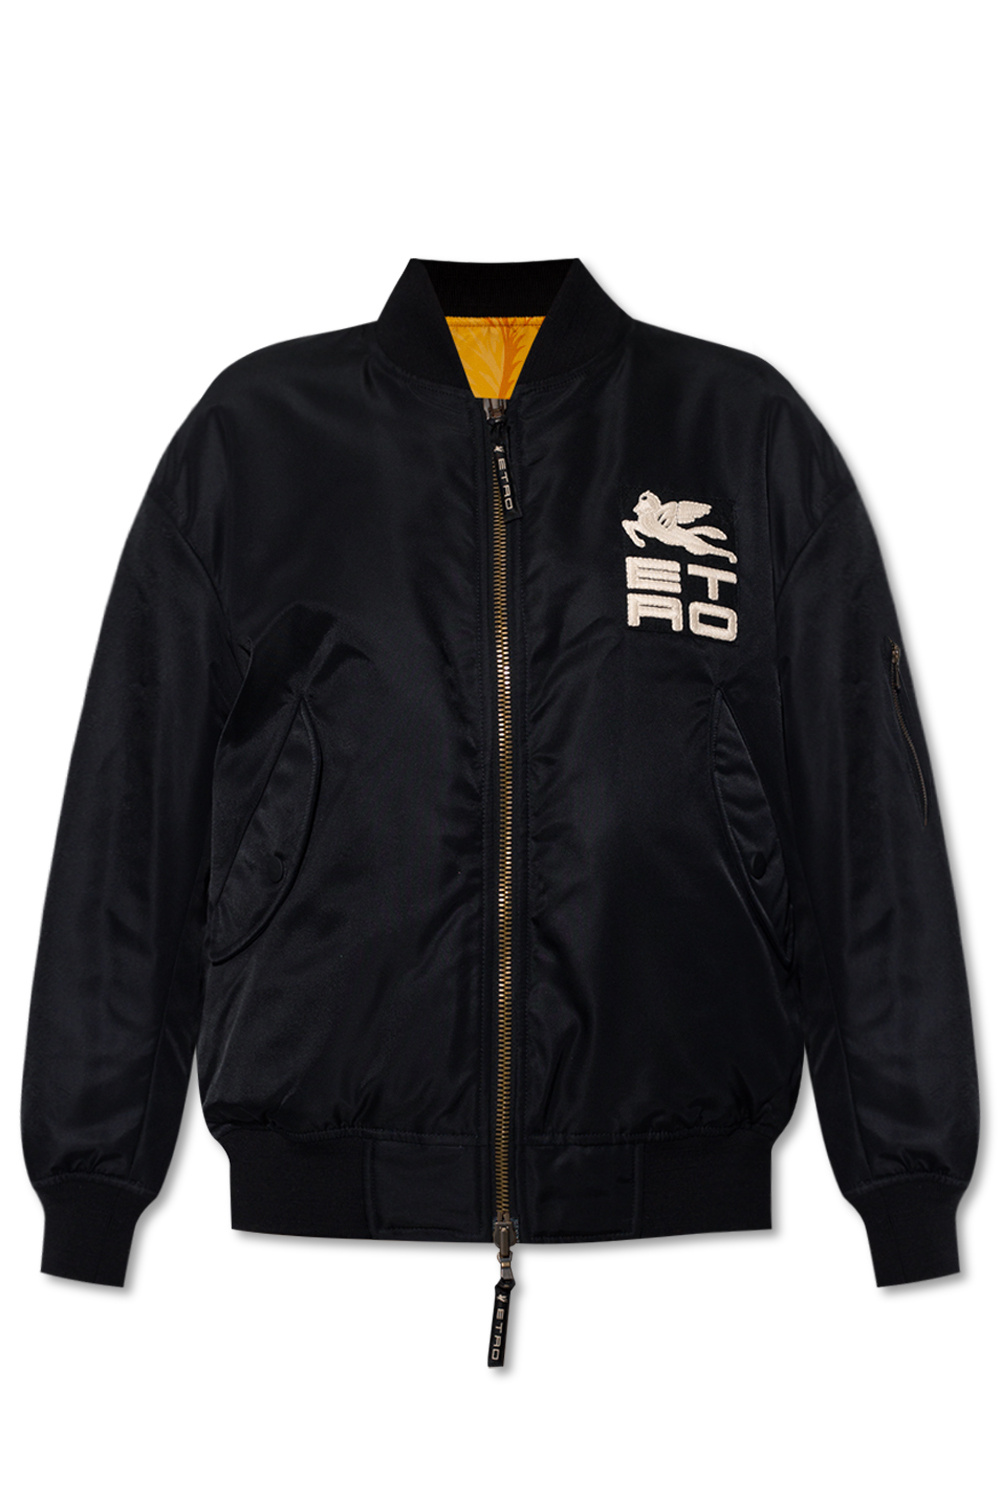 Etro Bomber jacket